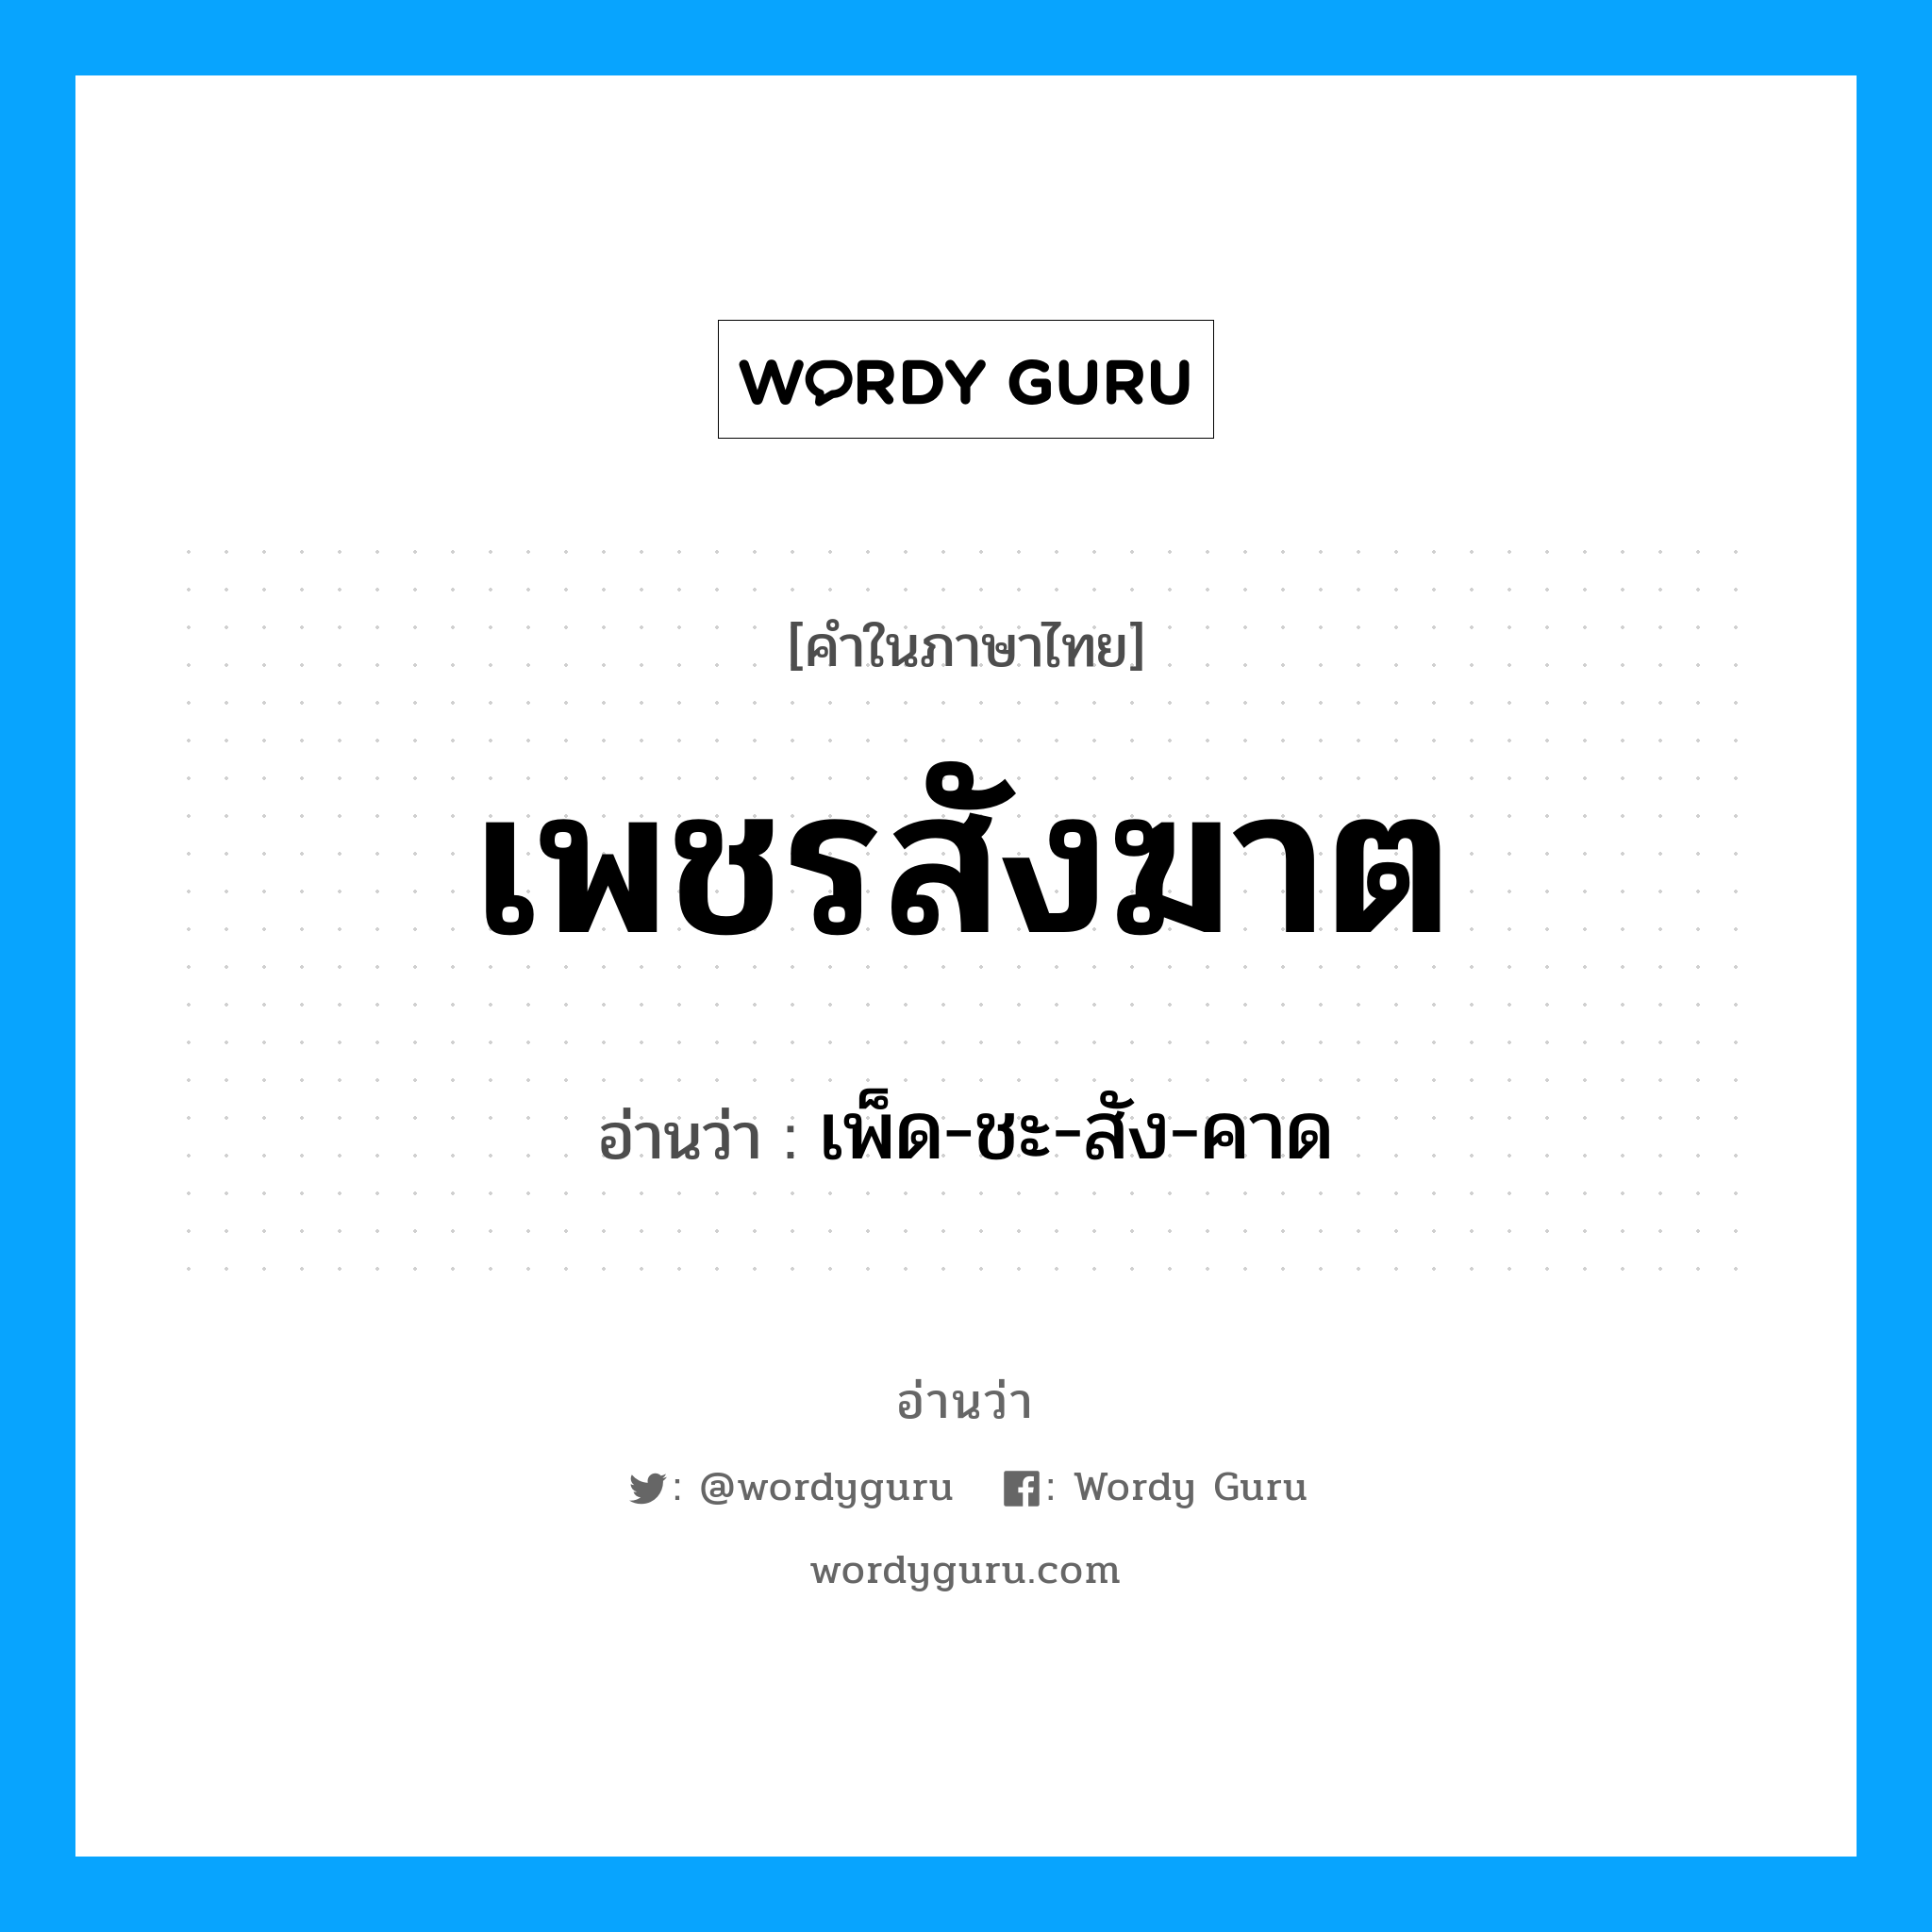 เพ็ด-ชะ-สัง-คาด เป็นคำอ่านของคำไหน?, คำในภาษาไทย เพ็ด-ชะ-สัง-คาด อ่านว่า เพชรสังฆาต